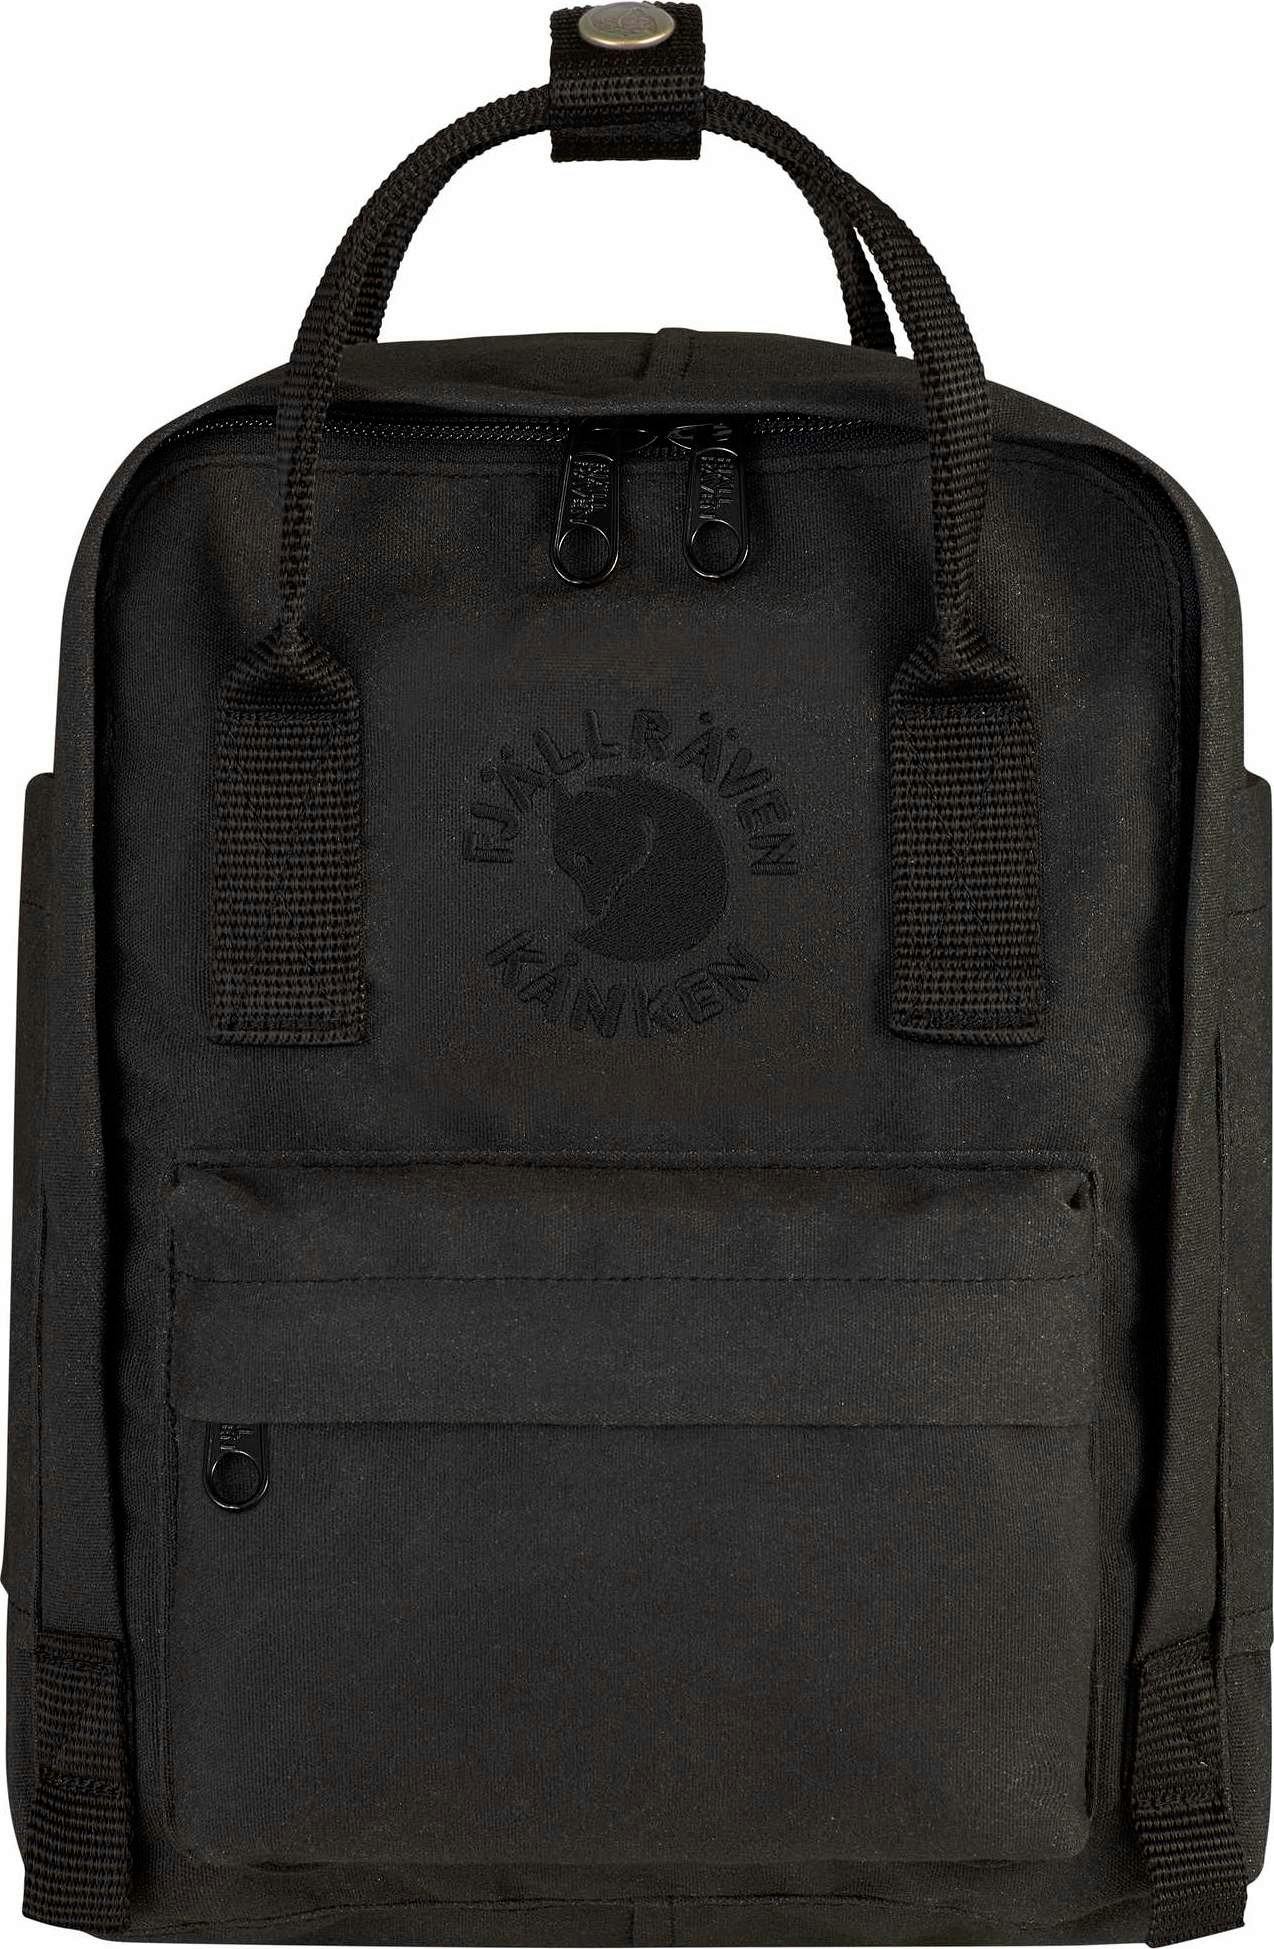 Product image for Re-Kånken Mini Backpack 7L